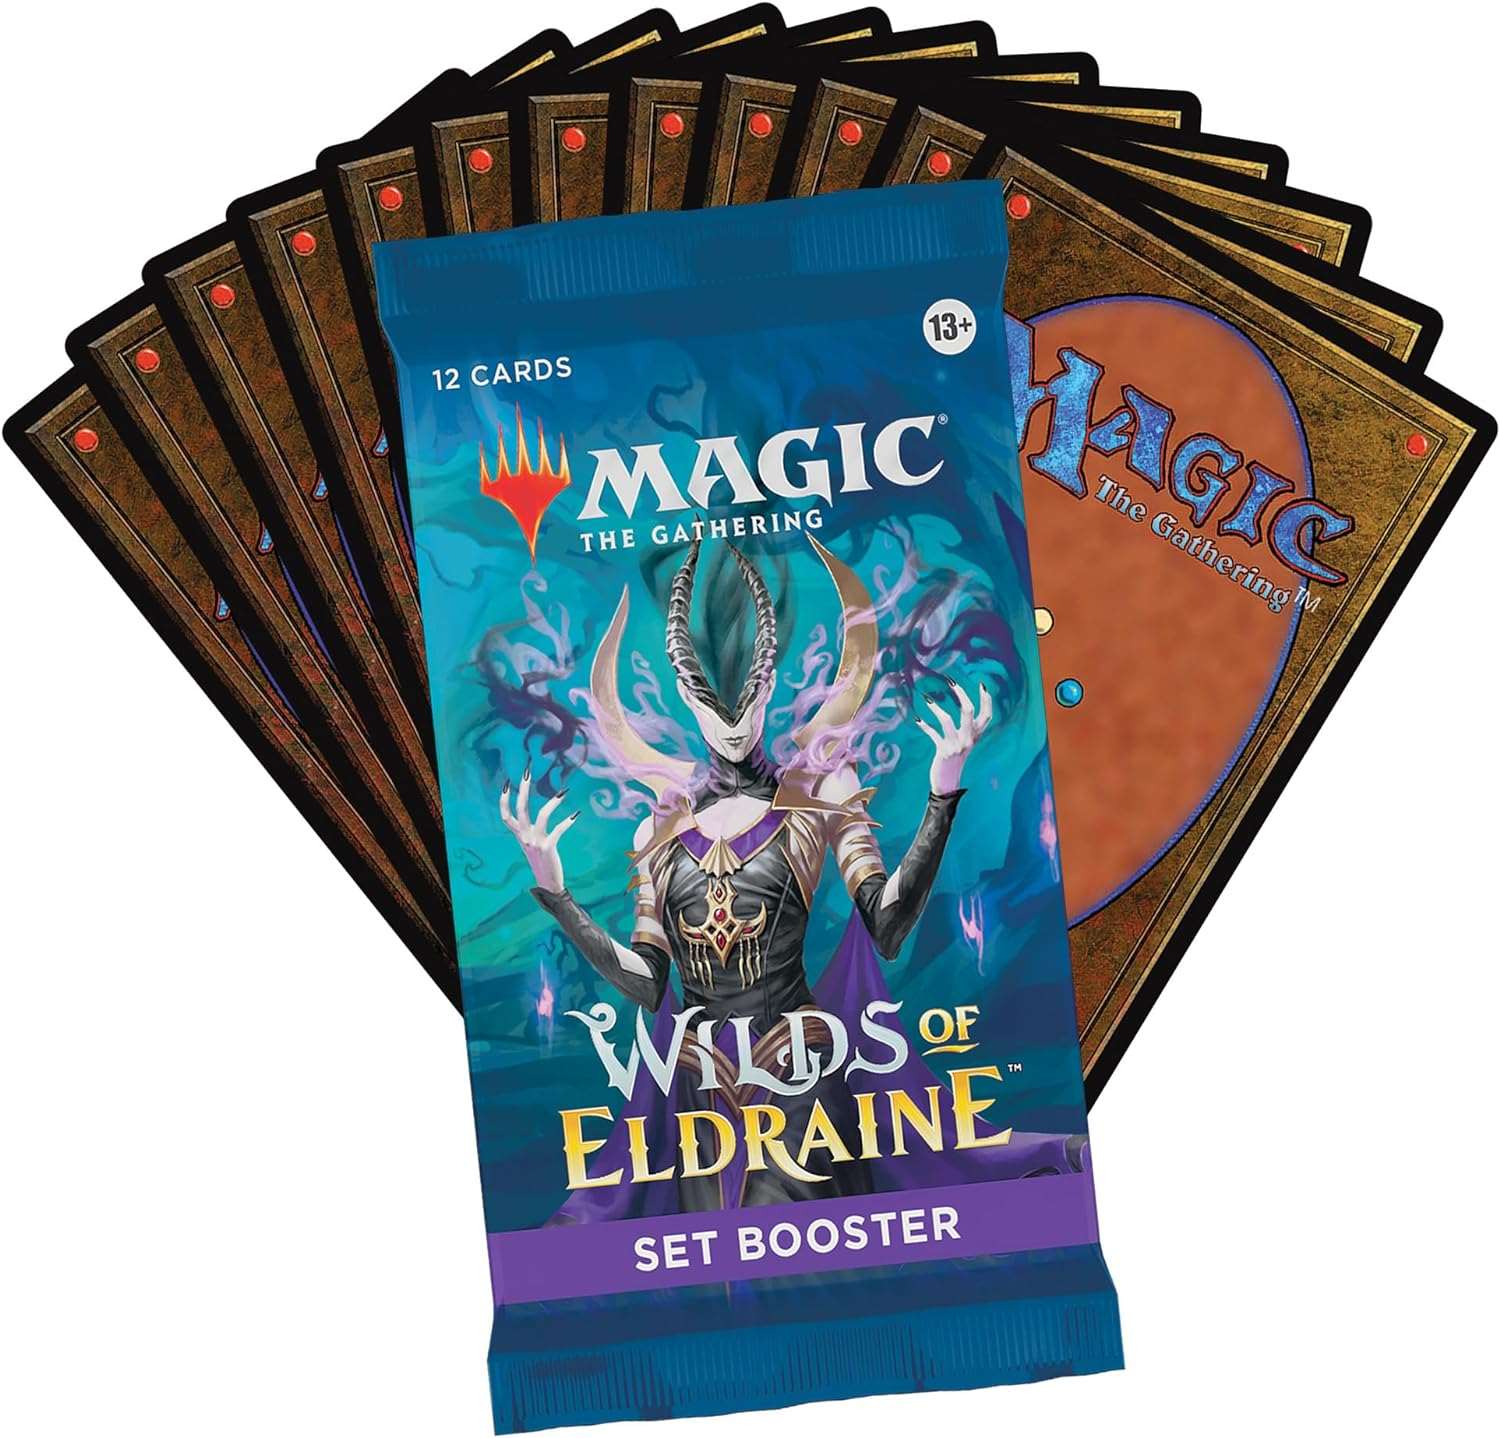  Magic: The Gathering, Wilds of Eldraine, Set Booster Box, Kartenspiel, Sammelkartenspiel, Fantasy, Märchen, Abenteuer, Strategie, Spiel, Hobby, Erwachsene,